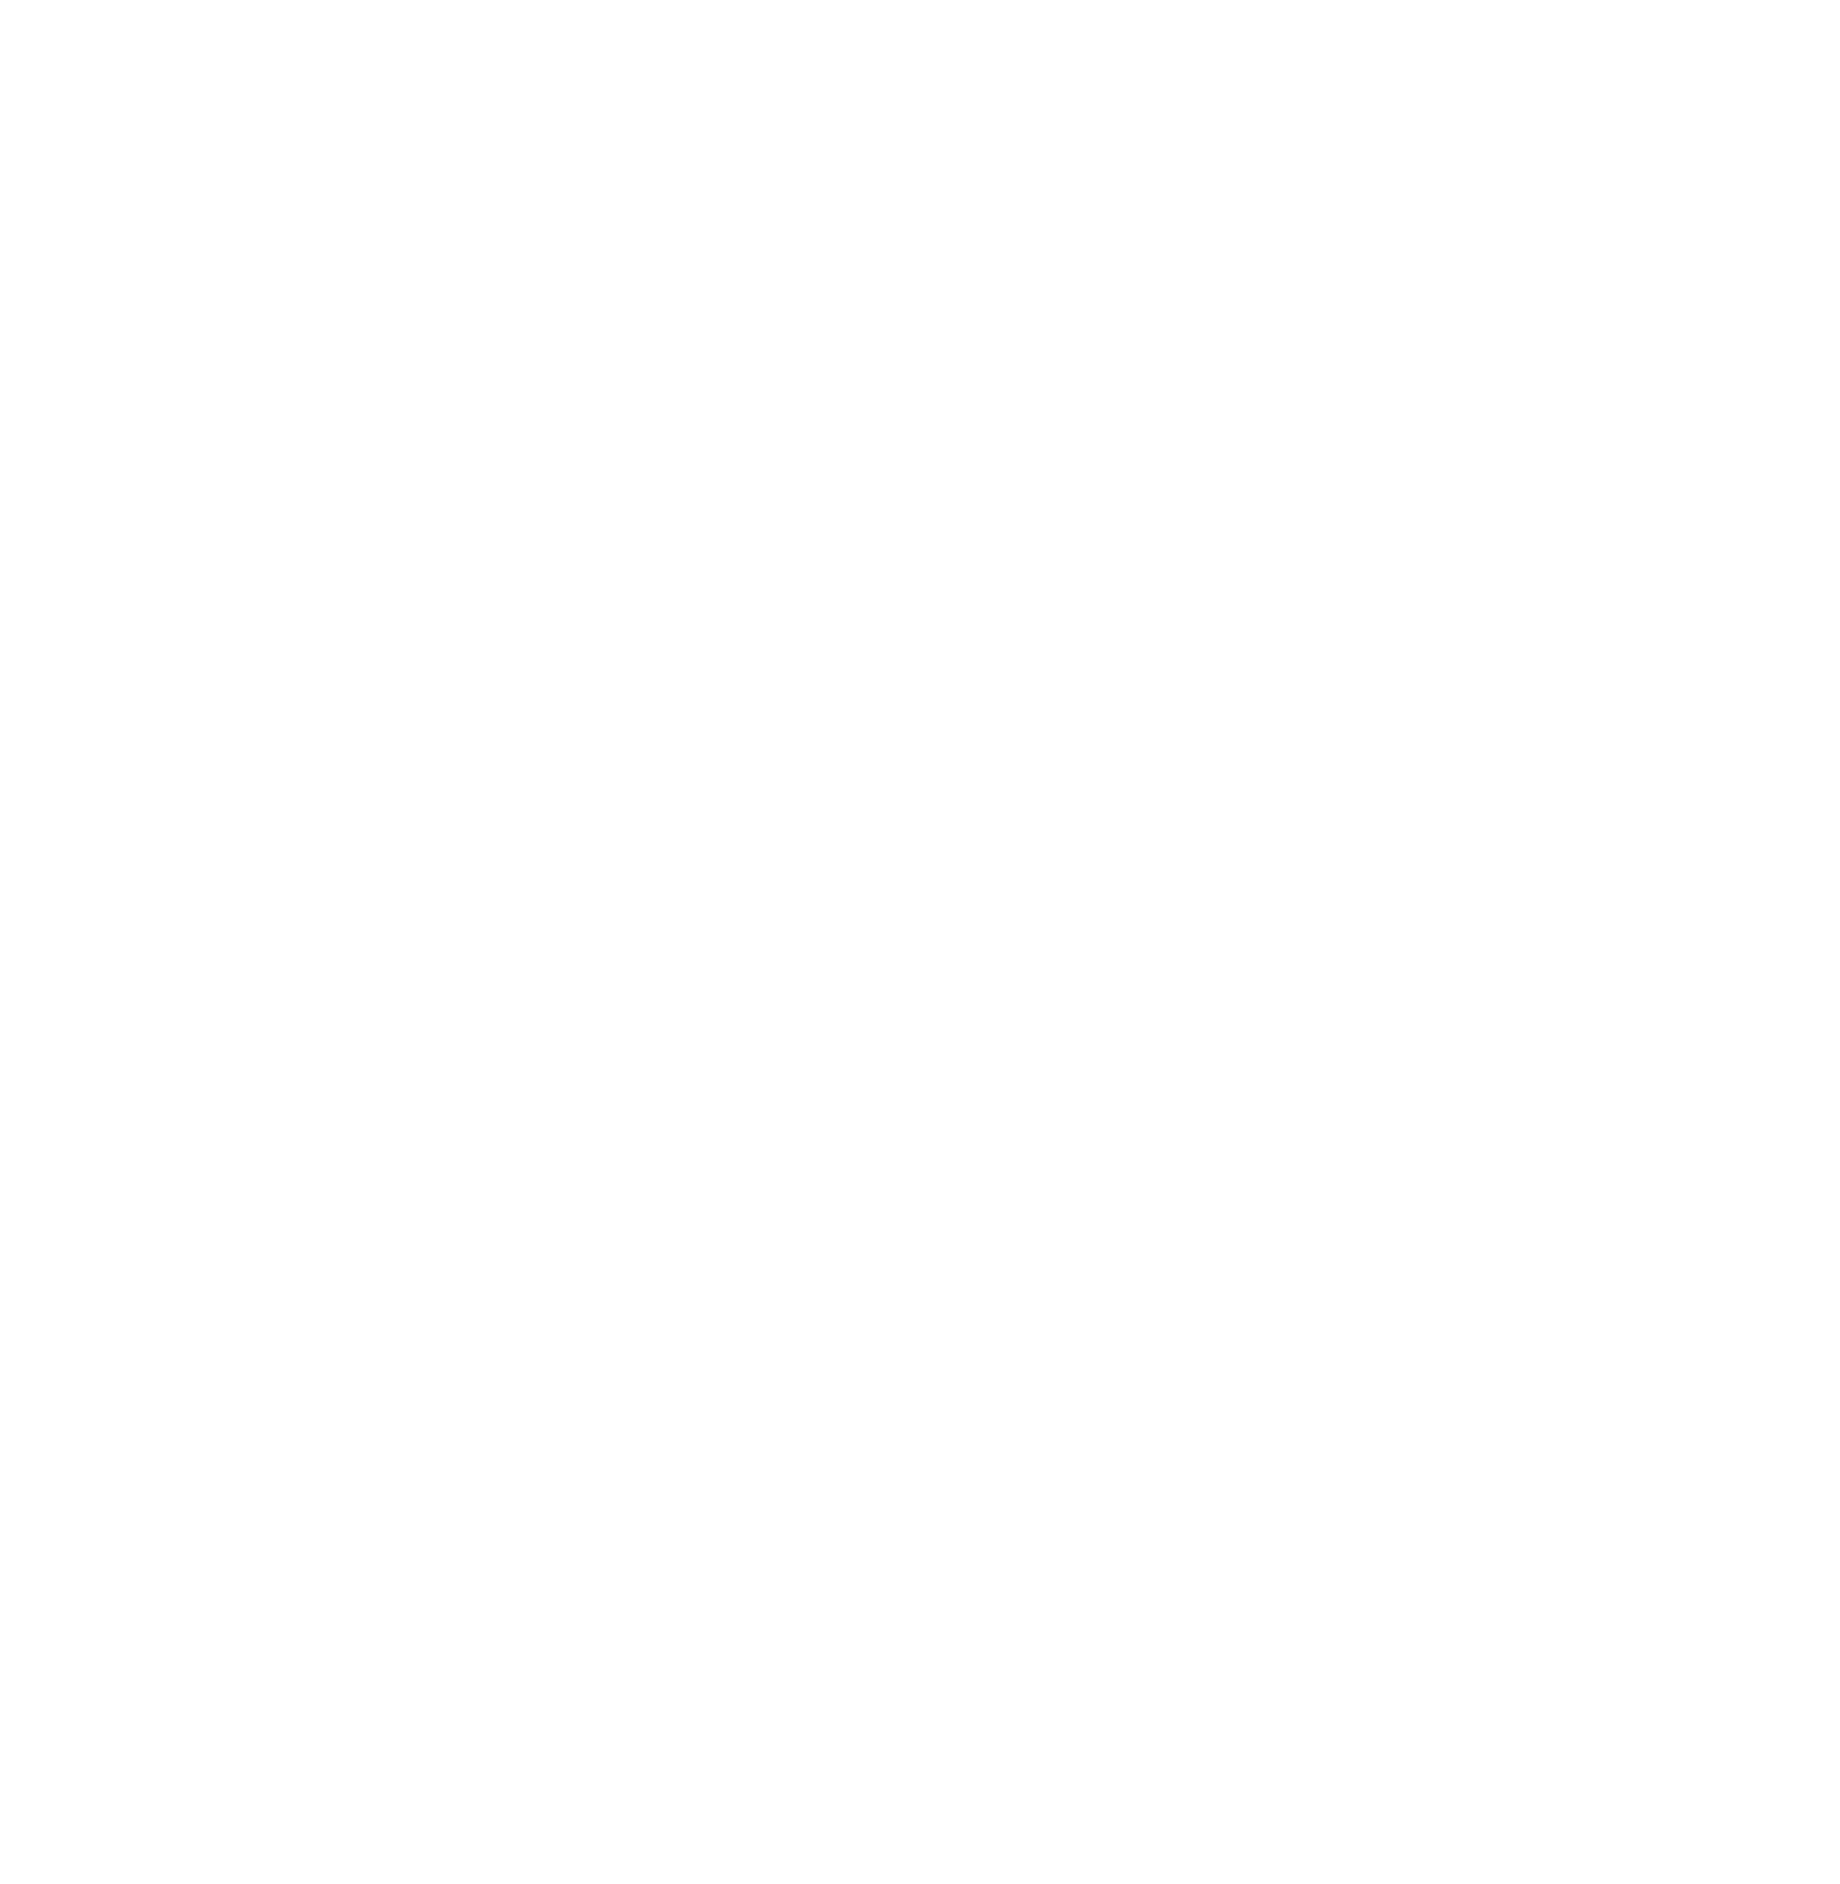 Tropical Food Ingredients